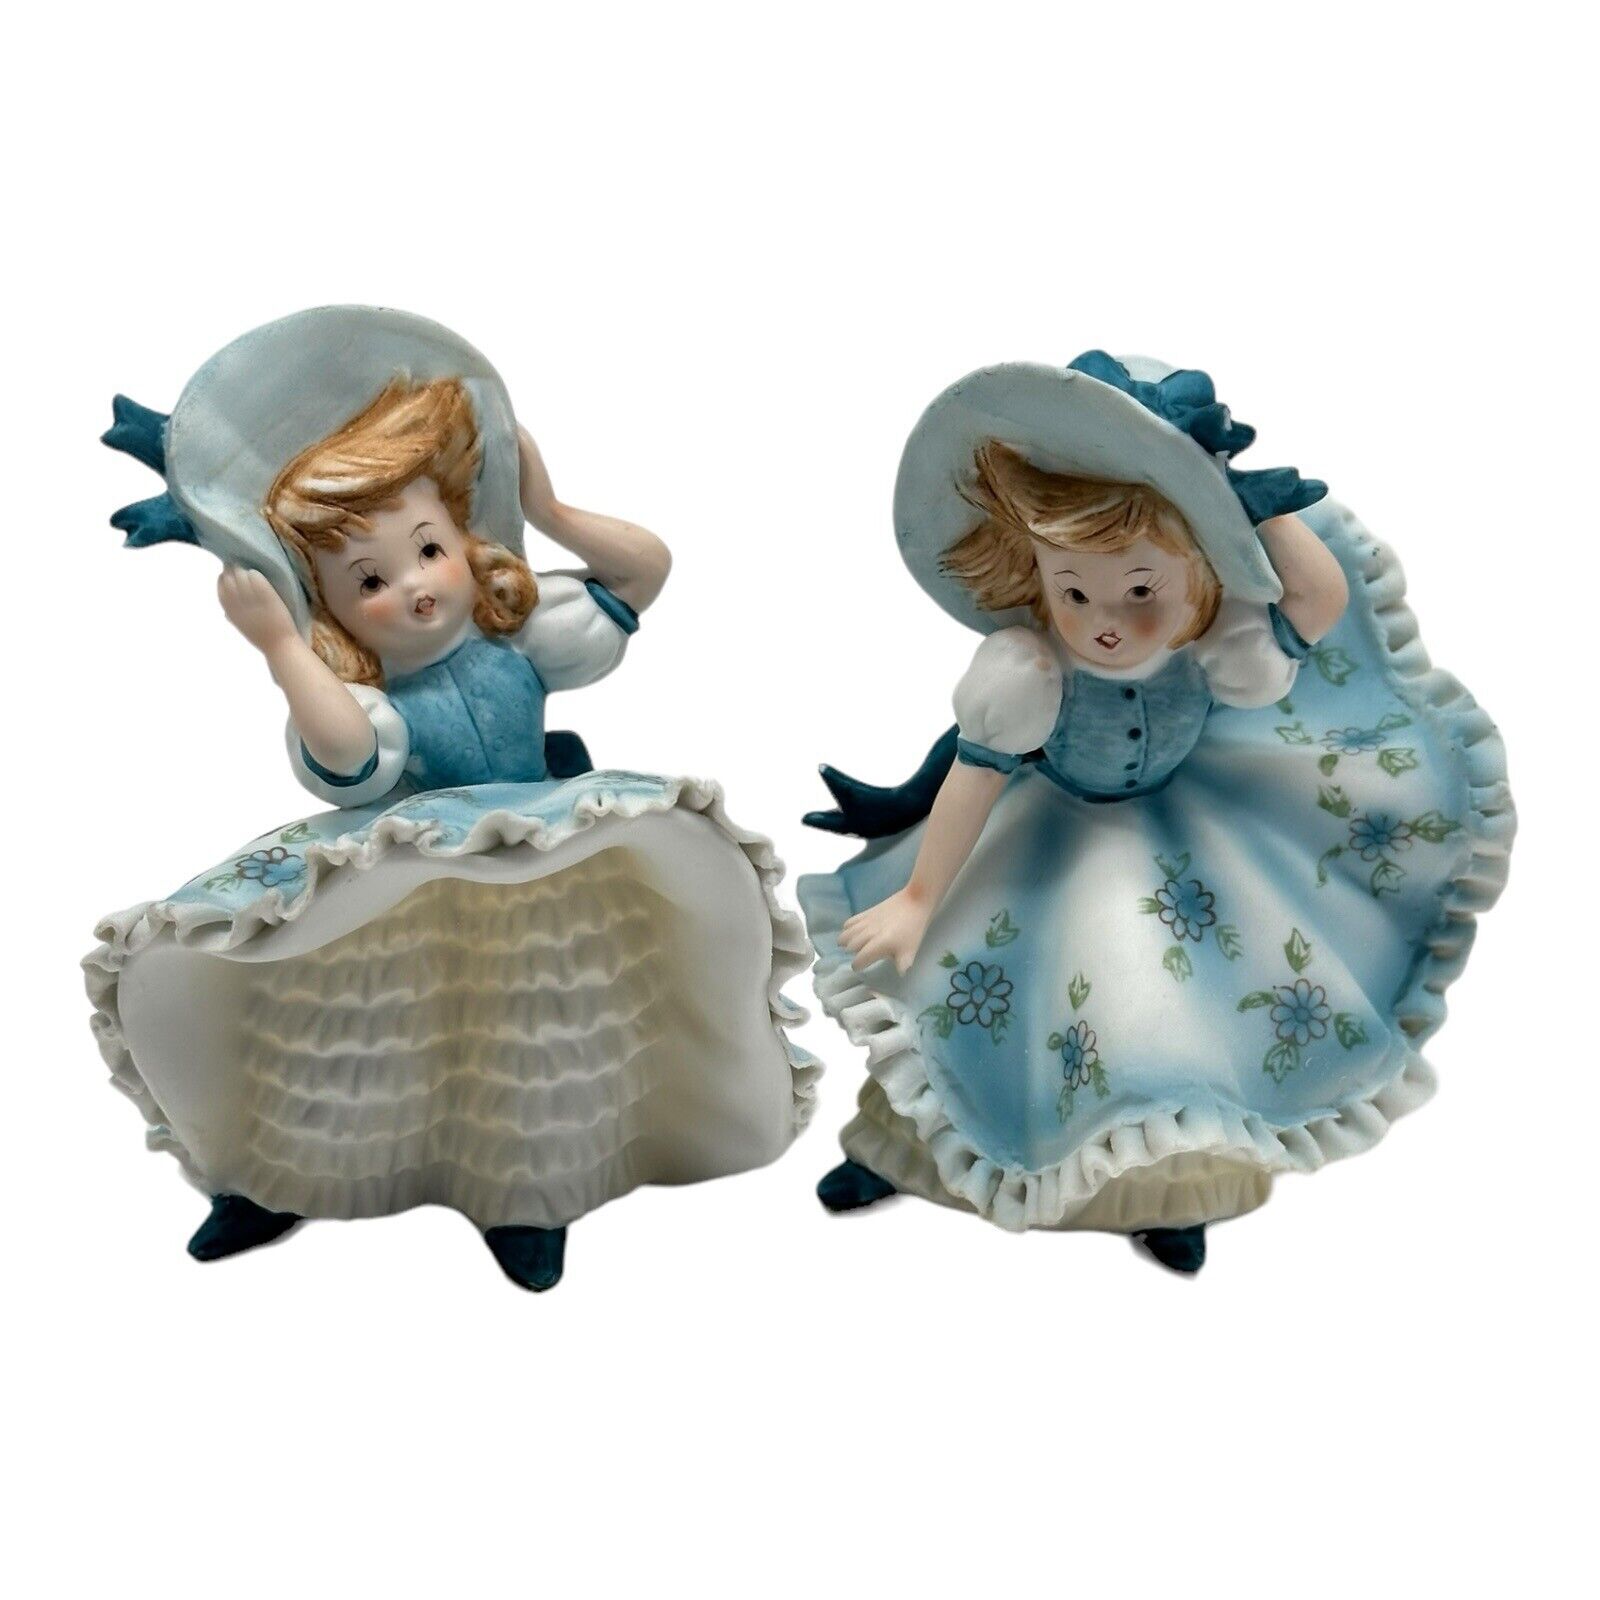 2 Vintage Lefton Figurine KW3701 Girl Blue Bonnet Ruffle Dress Windy Bloomer